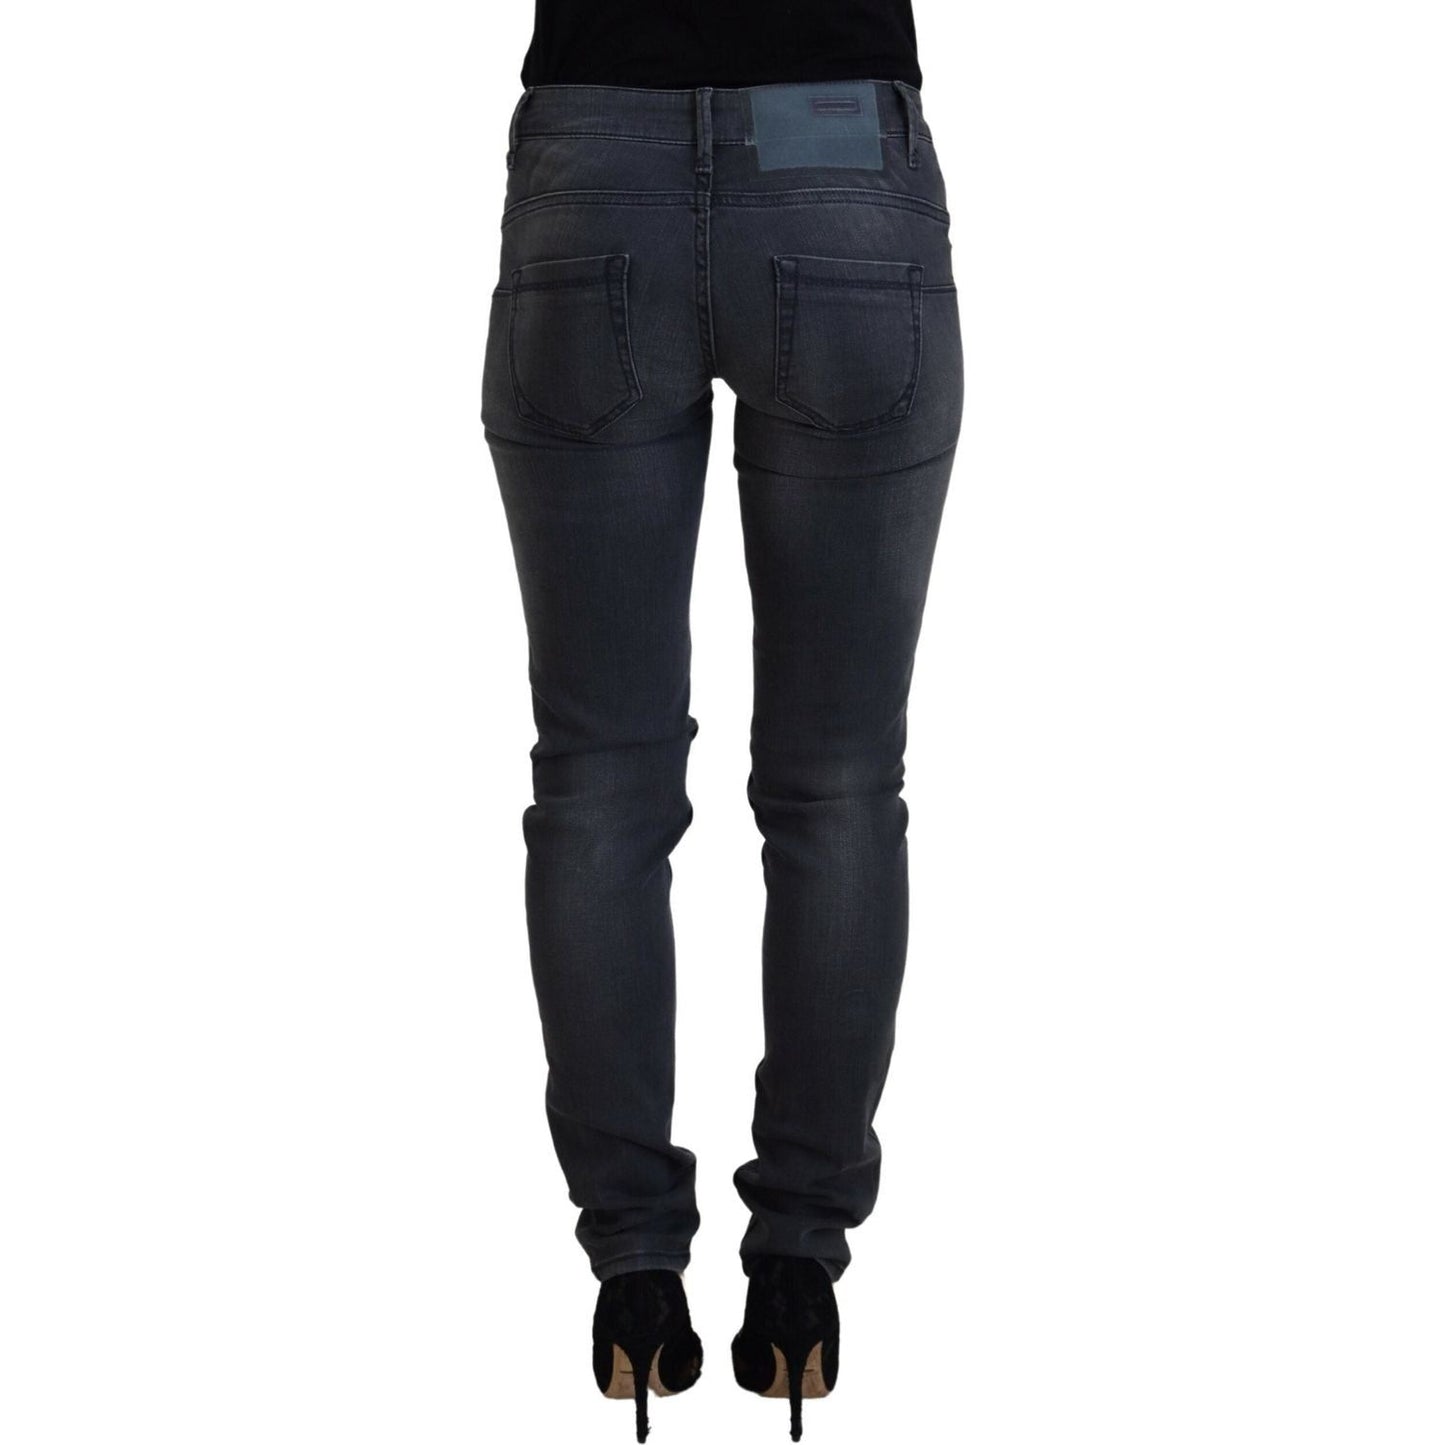 Acht Chic Gray Low Waist Skinny Jeans gray-cotton-skinny-low-waist-women-casual-denim-jeans